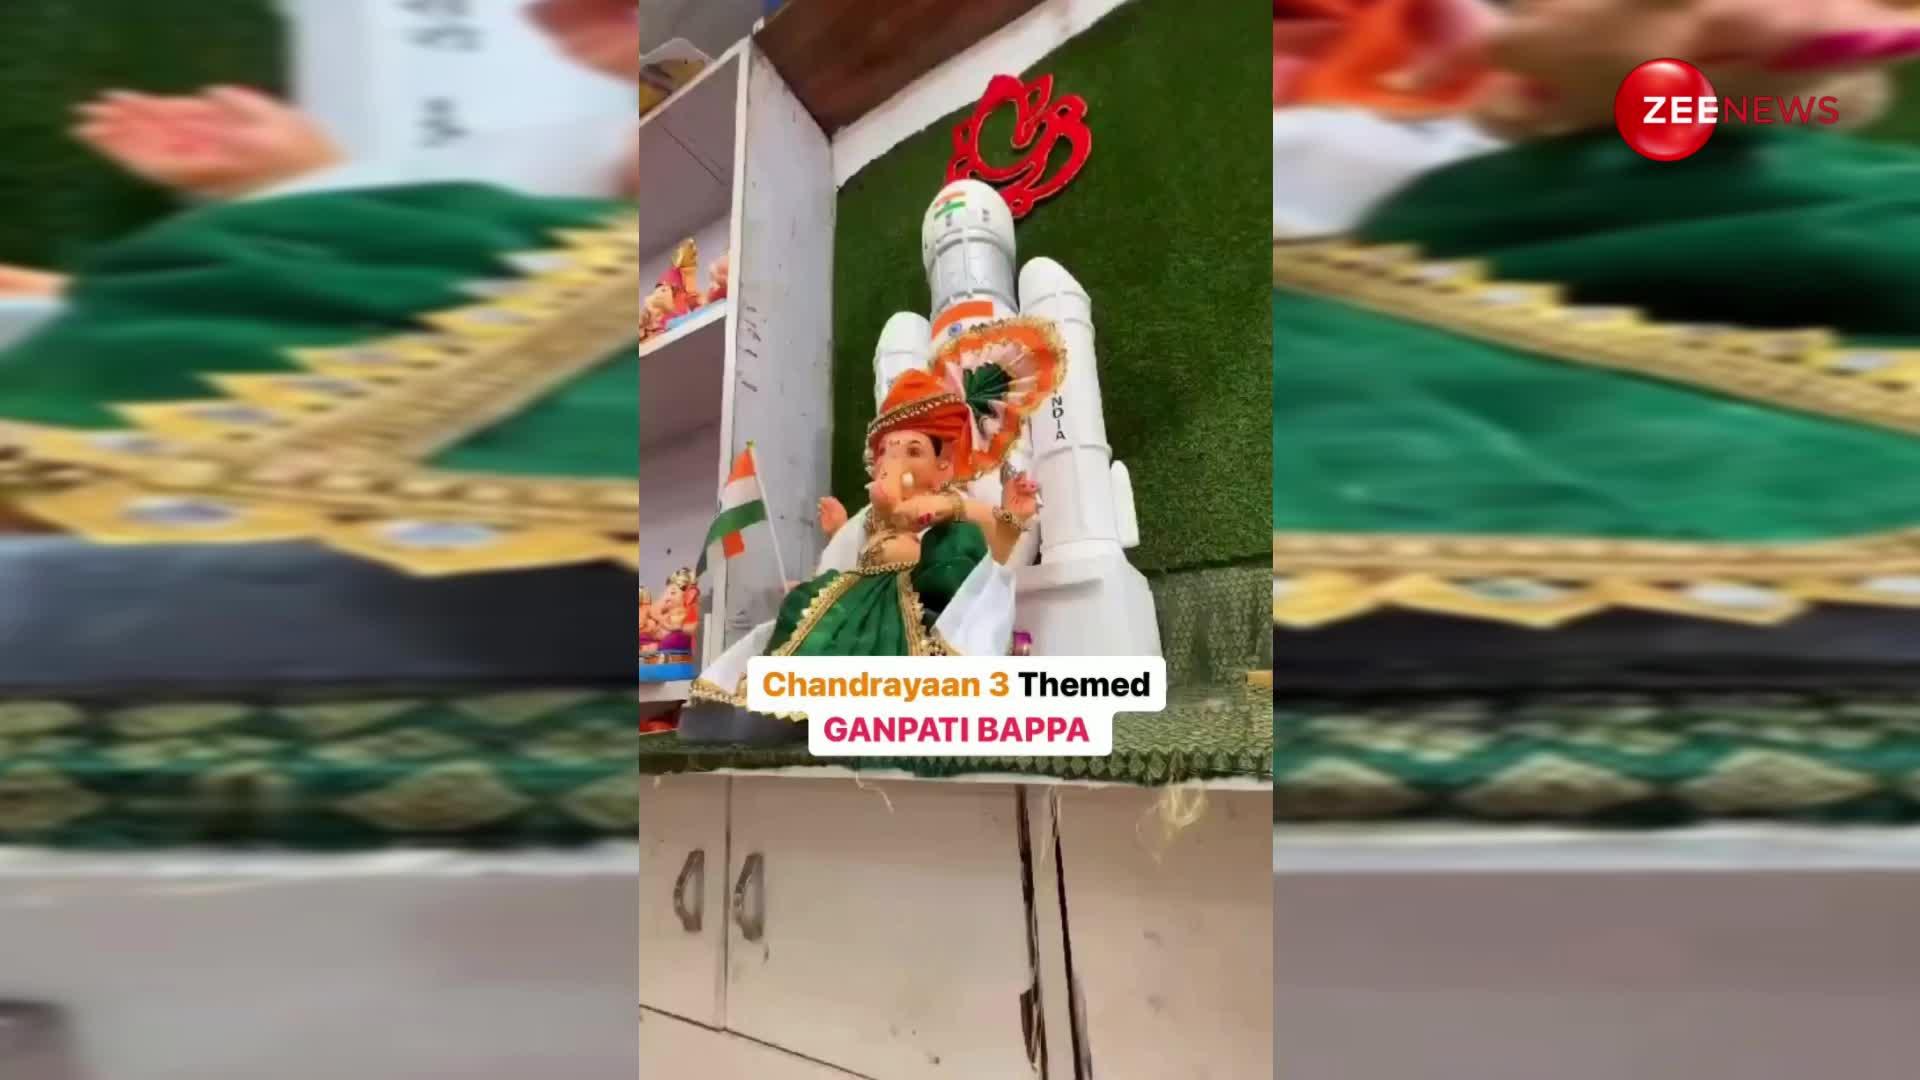 Chandrayaan-3 की थीम पर दिखी गणेश जी की मूर्ति, वीडियो हुआ वायरल